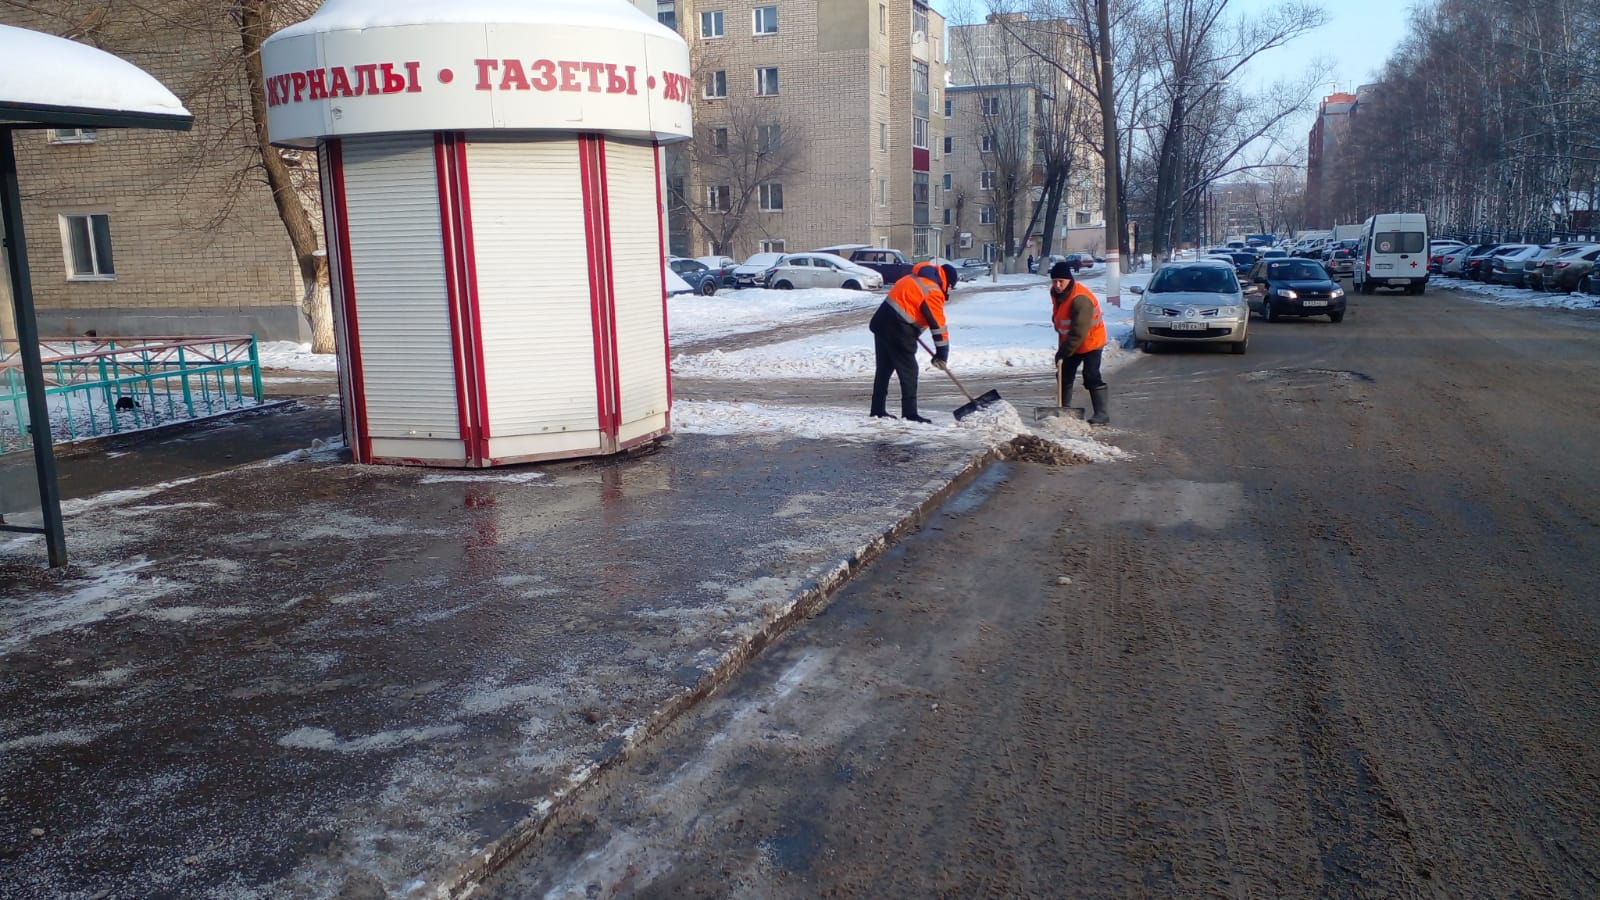  В Саранске продолжаются уборка дорог и тротуаров от снега и обработка противогололедными материалами